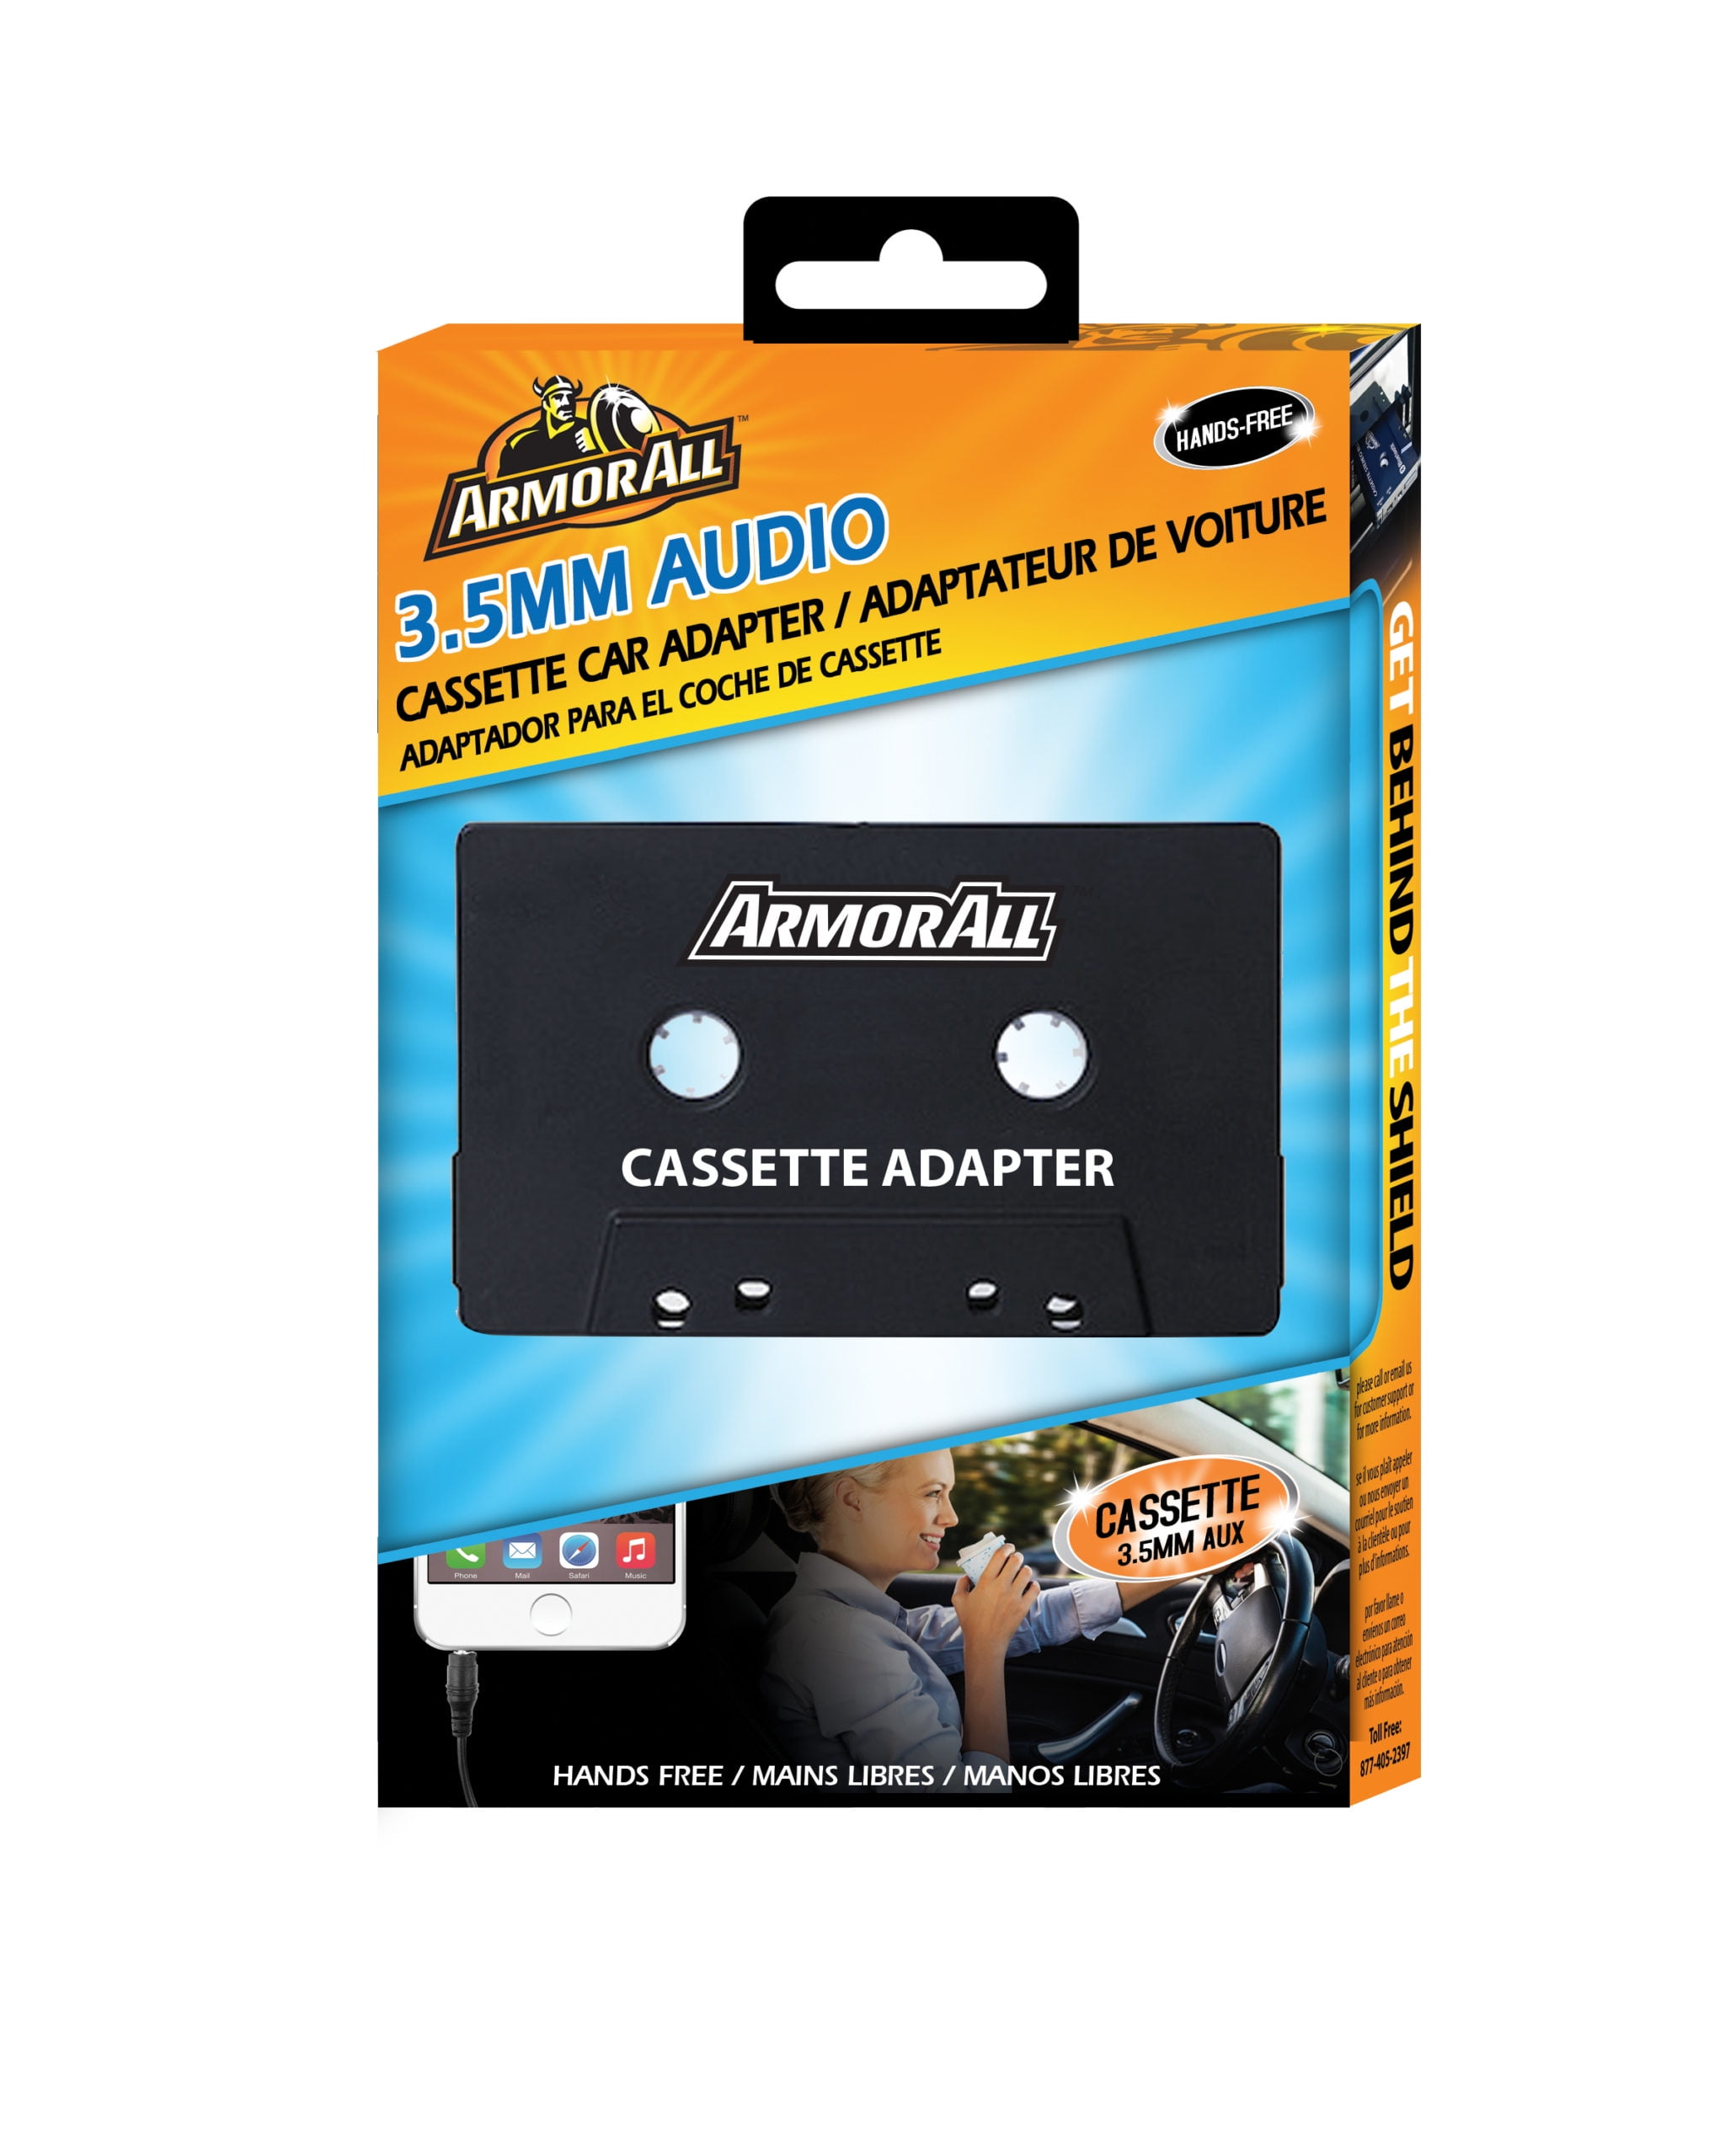 Genuine Phillips Magnavox AY3501 Car Audio Cassette Tape Adapter 3.5 M